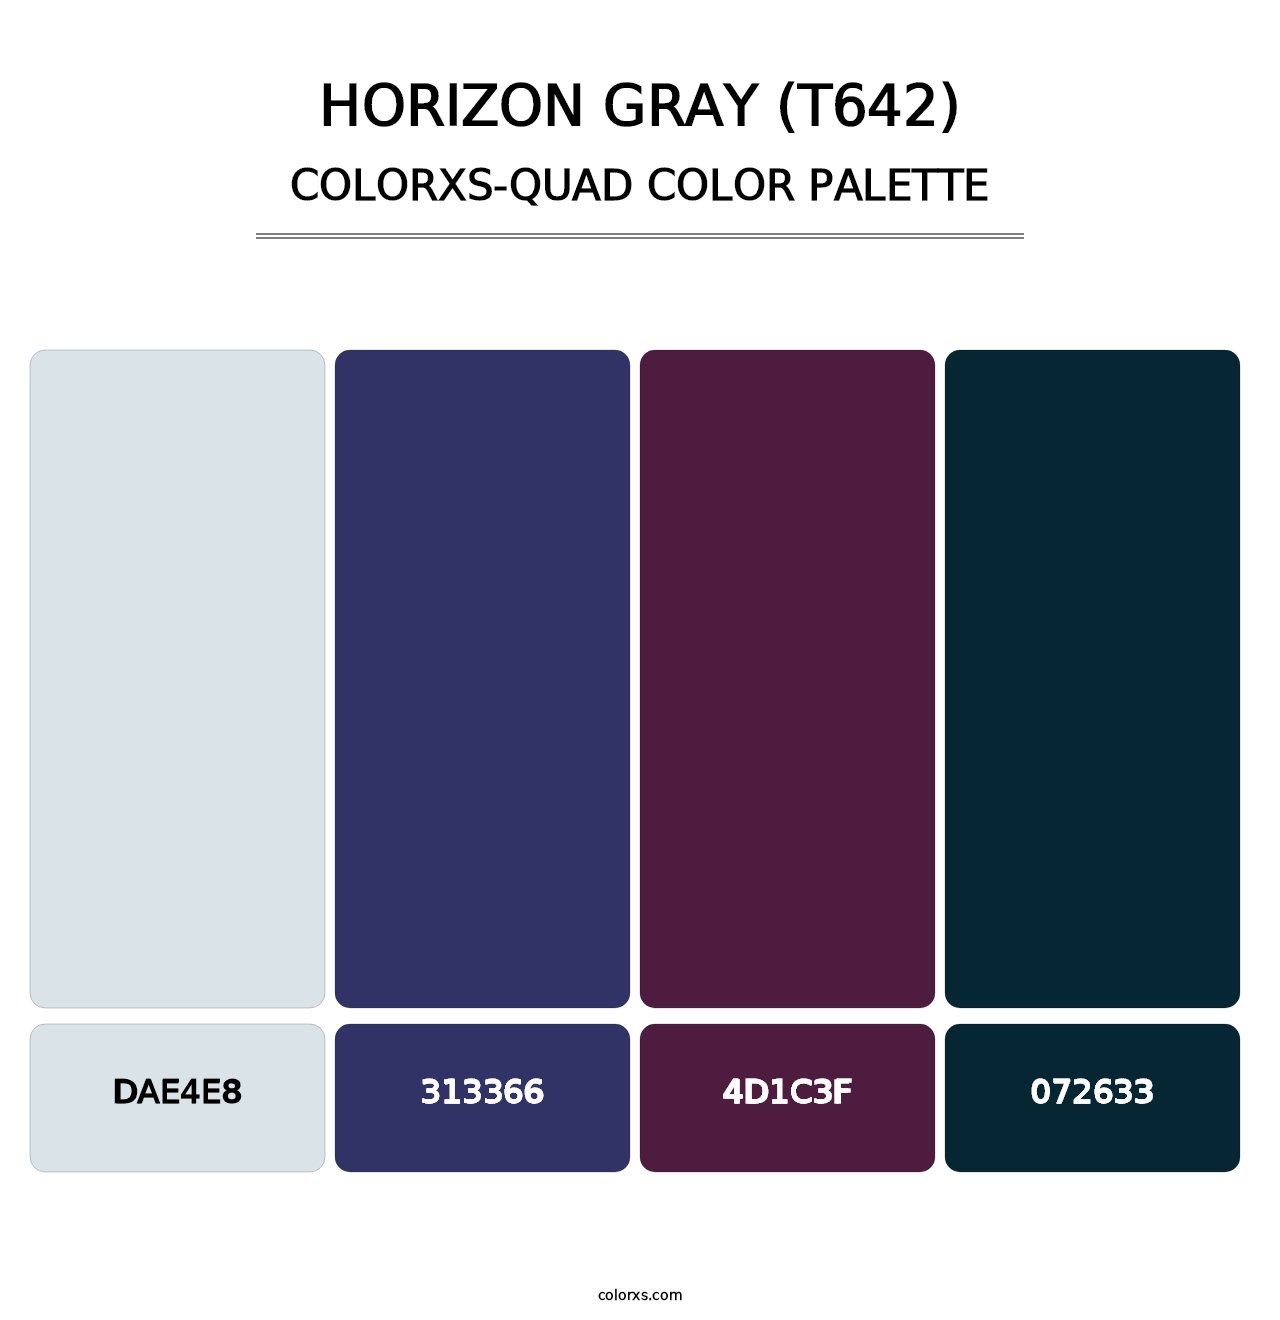 Horizon Gray (T642) - Colorxs Quad Palette